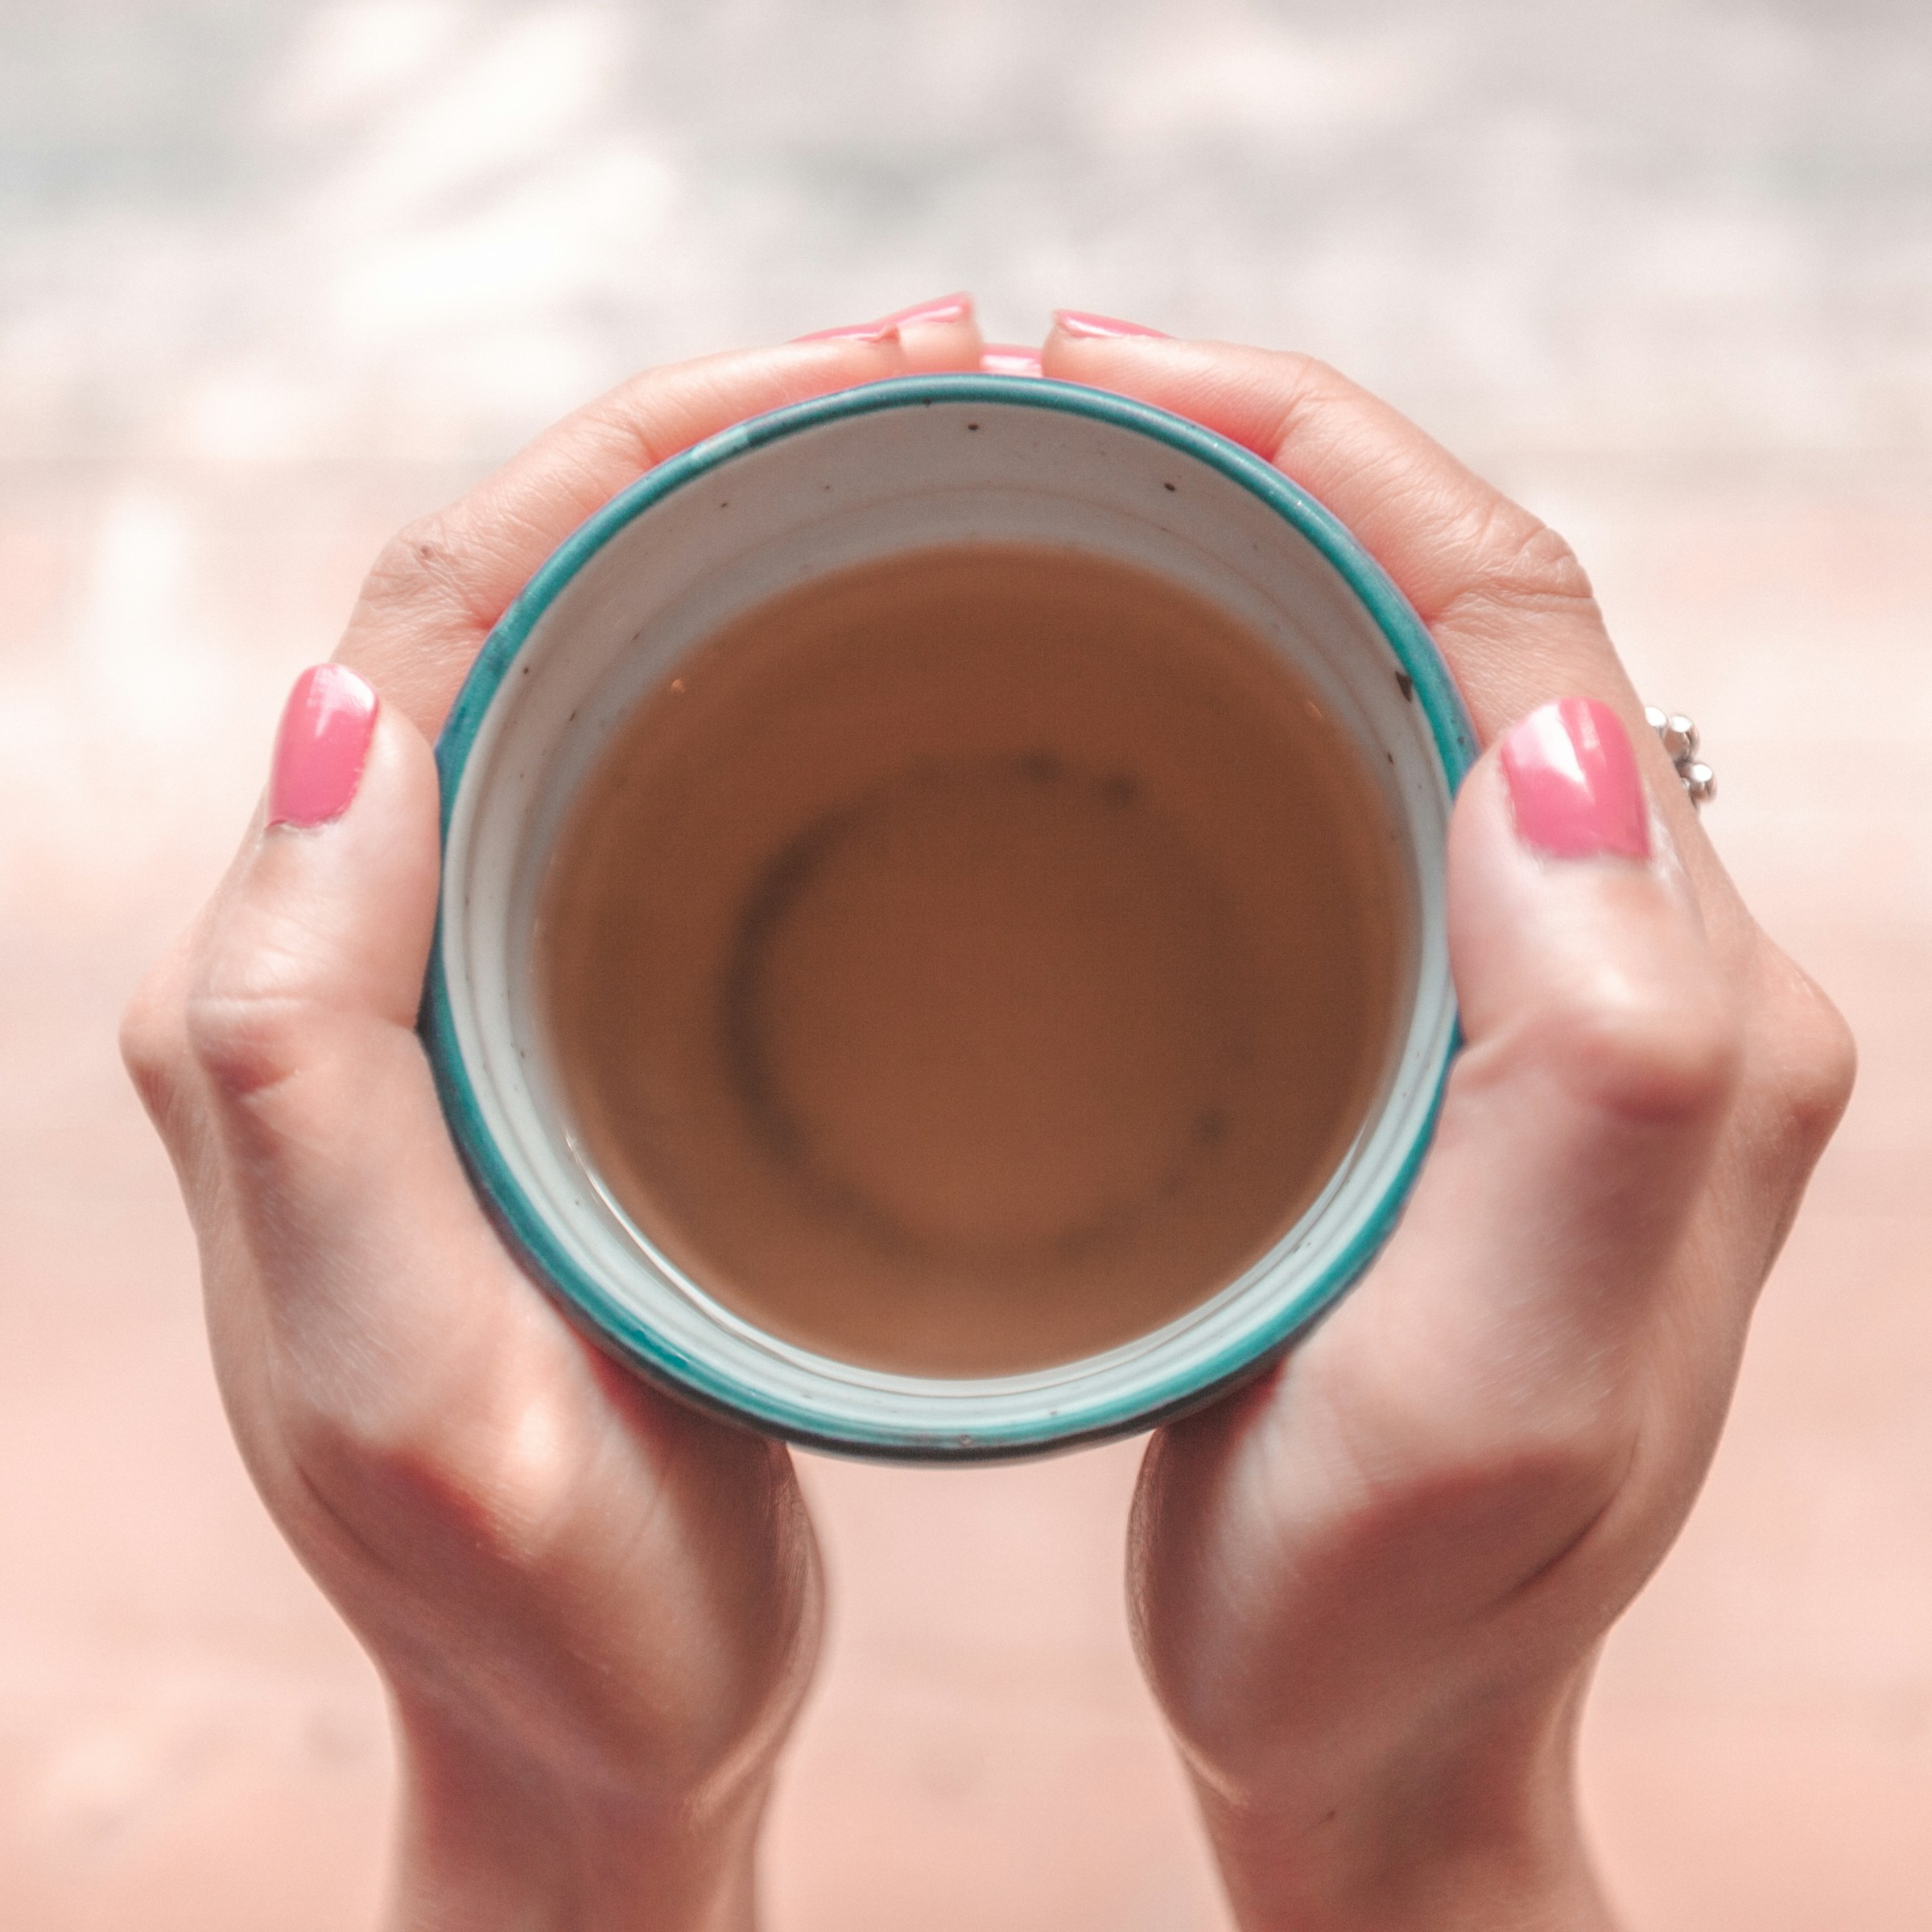 Una persona con una taza de té en la mano | Fuente: Unsplash